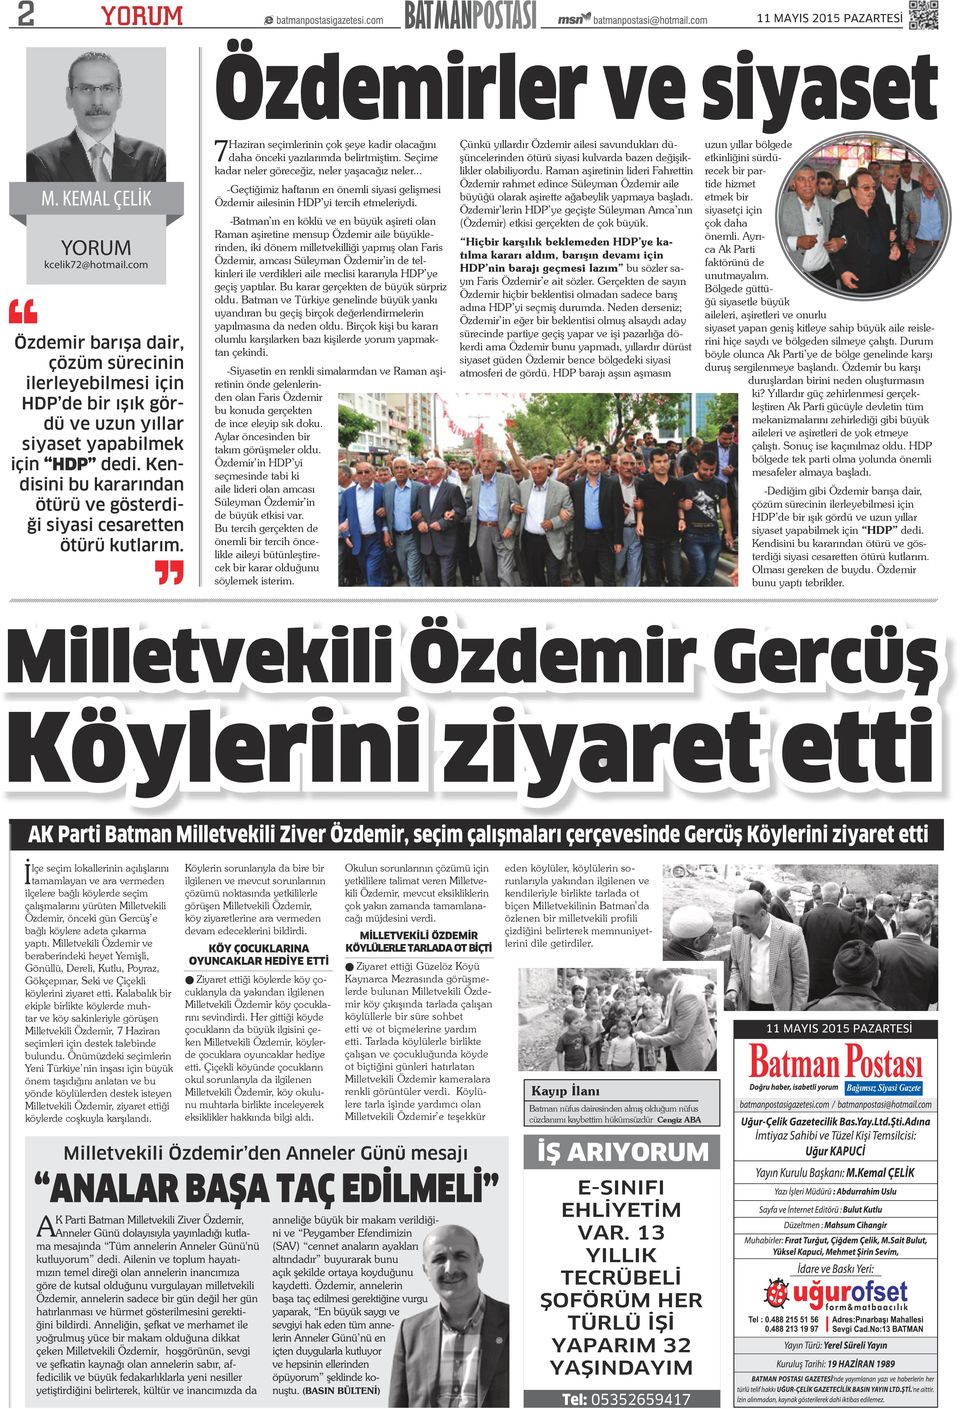 Seçime kadar neler göreceğiz, neler yaşacağız neler... -Geçtiğimiz haftanın en önemli siyasi gelişmesi Özdemir ailesinin HDP yi tercih etmeleriydi.